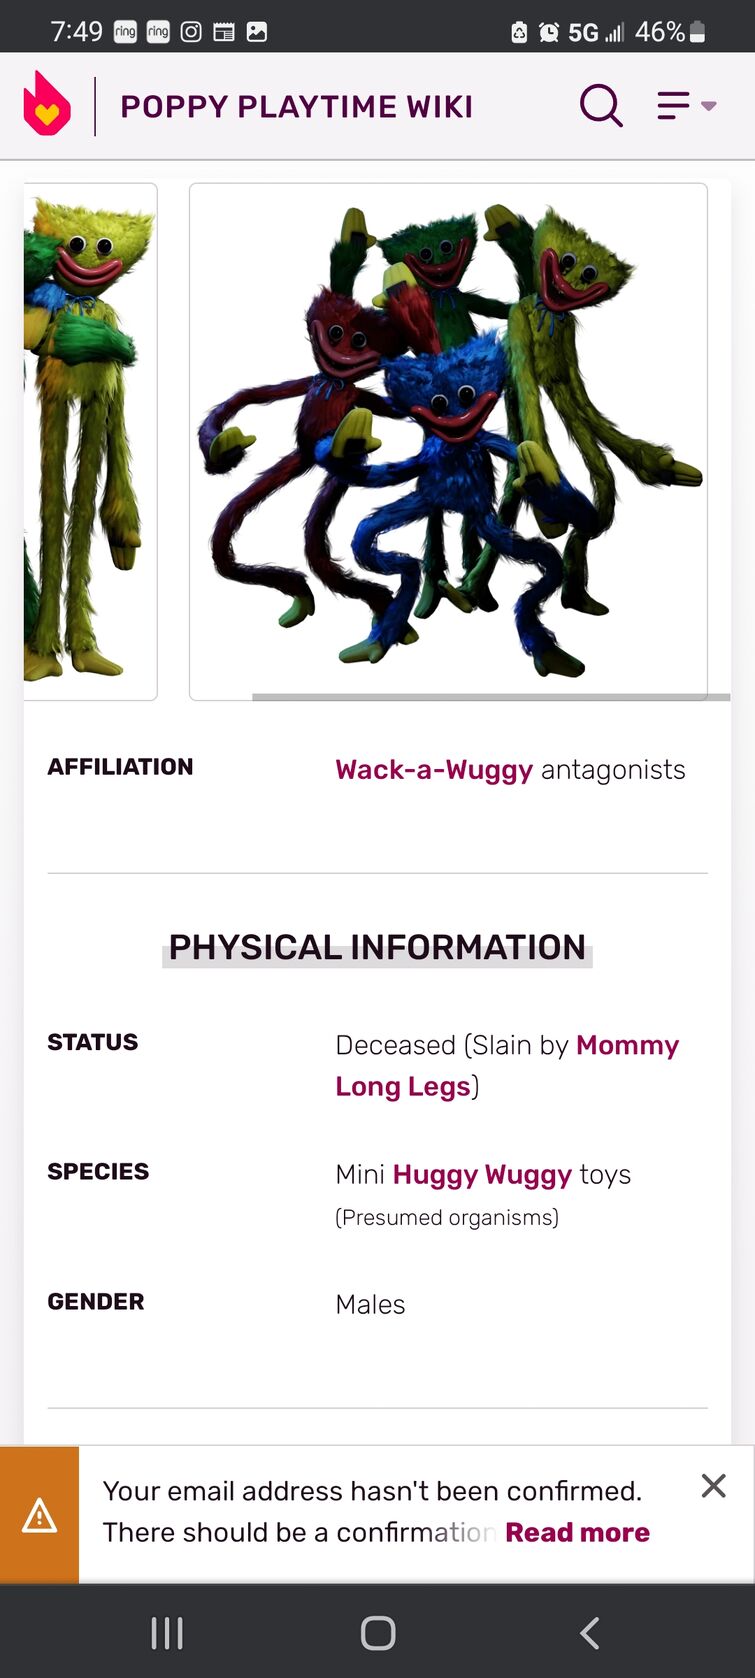 Mini Huggies, Poppy Playtime Wiki